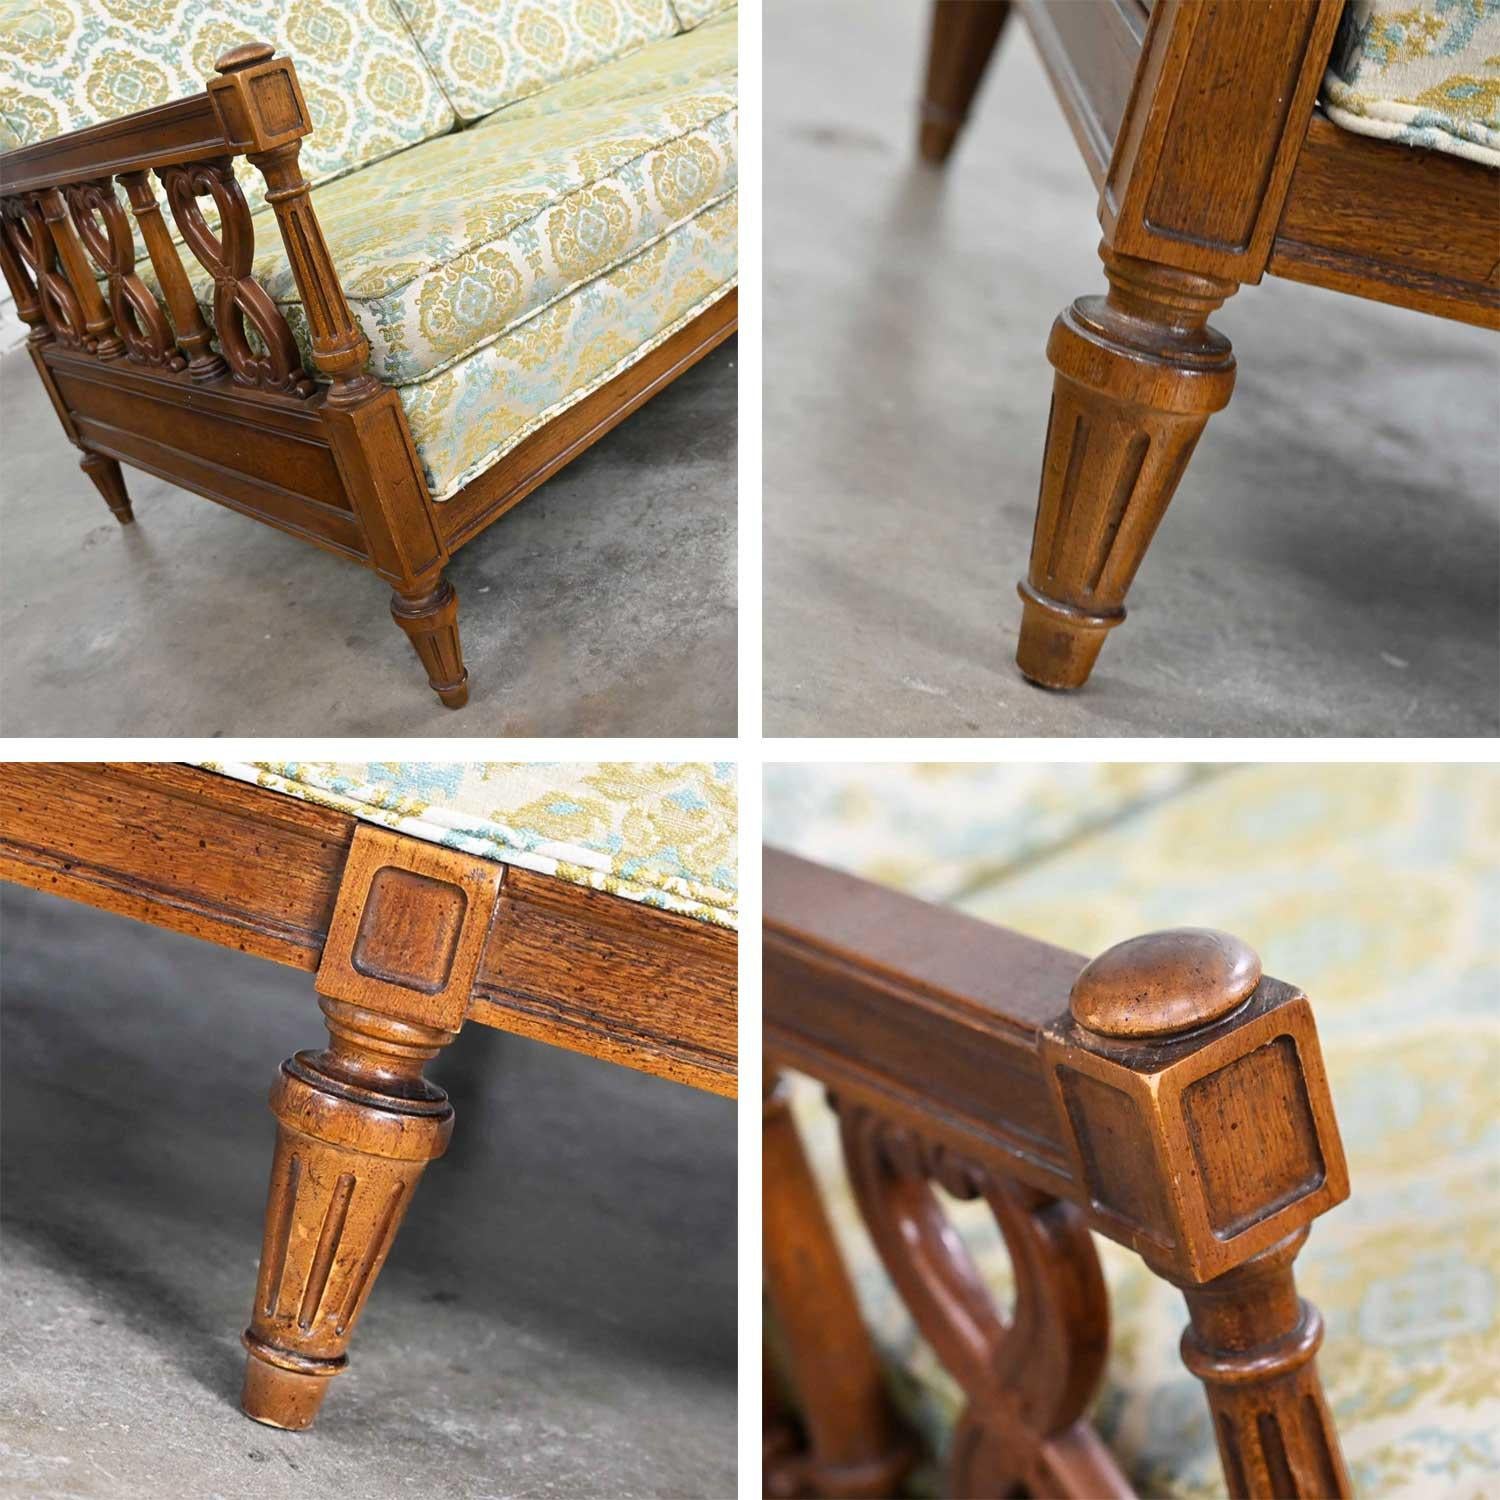 Vintage Mediterranean Spanish Revival Style Sofa Wood Details by American Furn 6